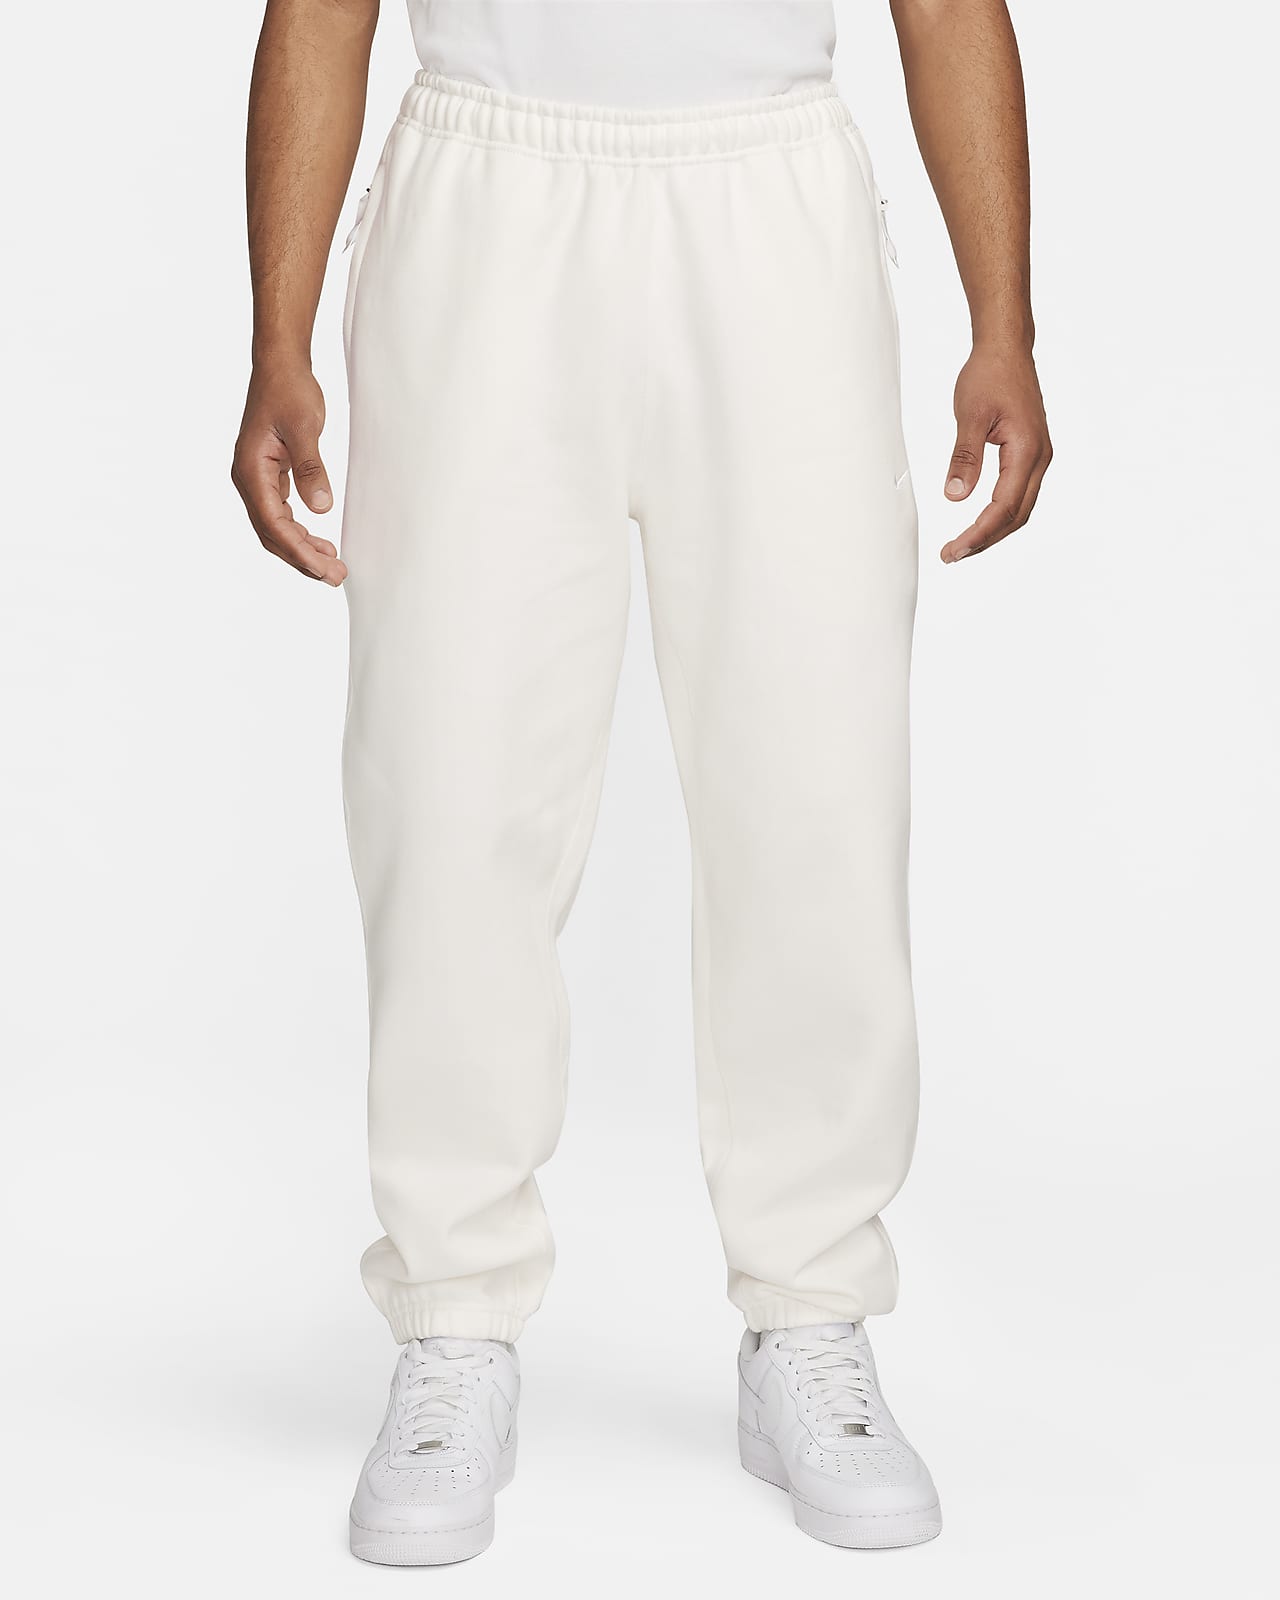 Pantaloni in fleece Nike Solo Swoosh - Uomo